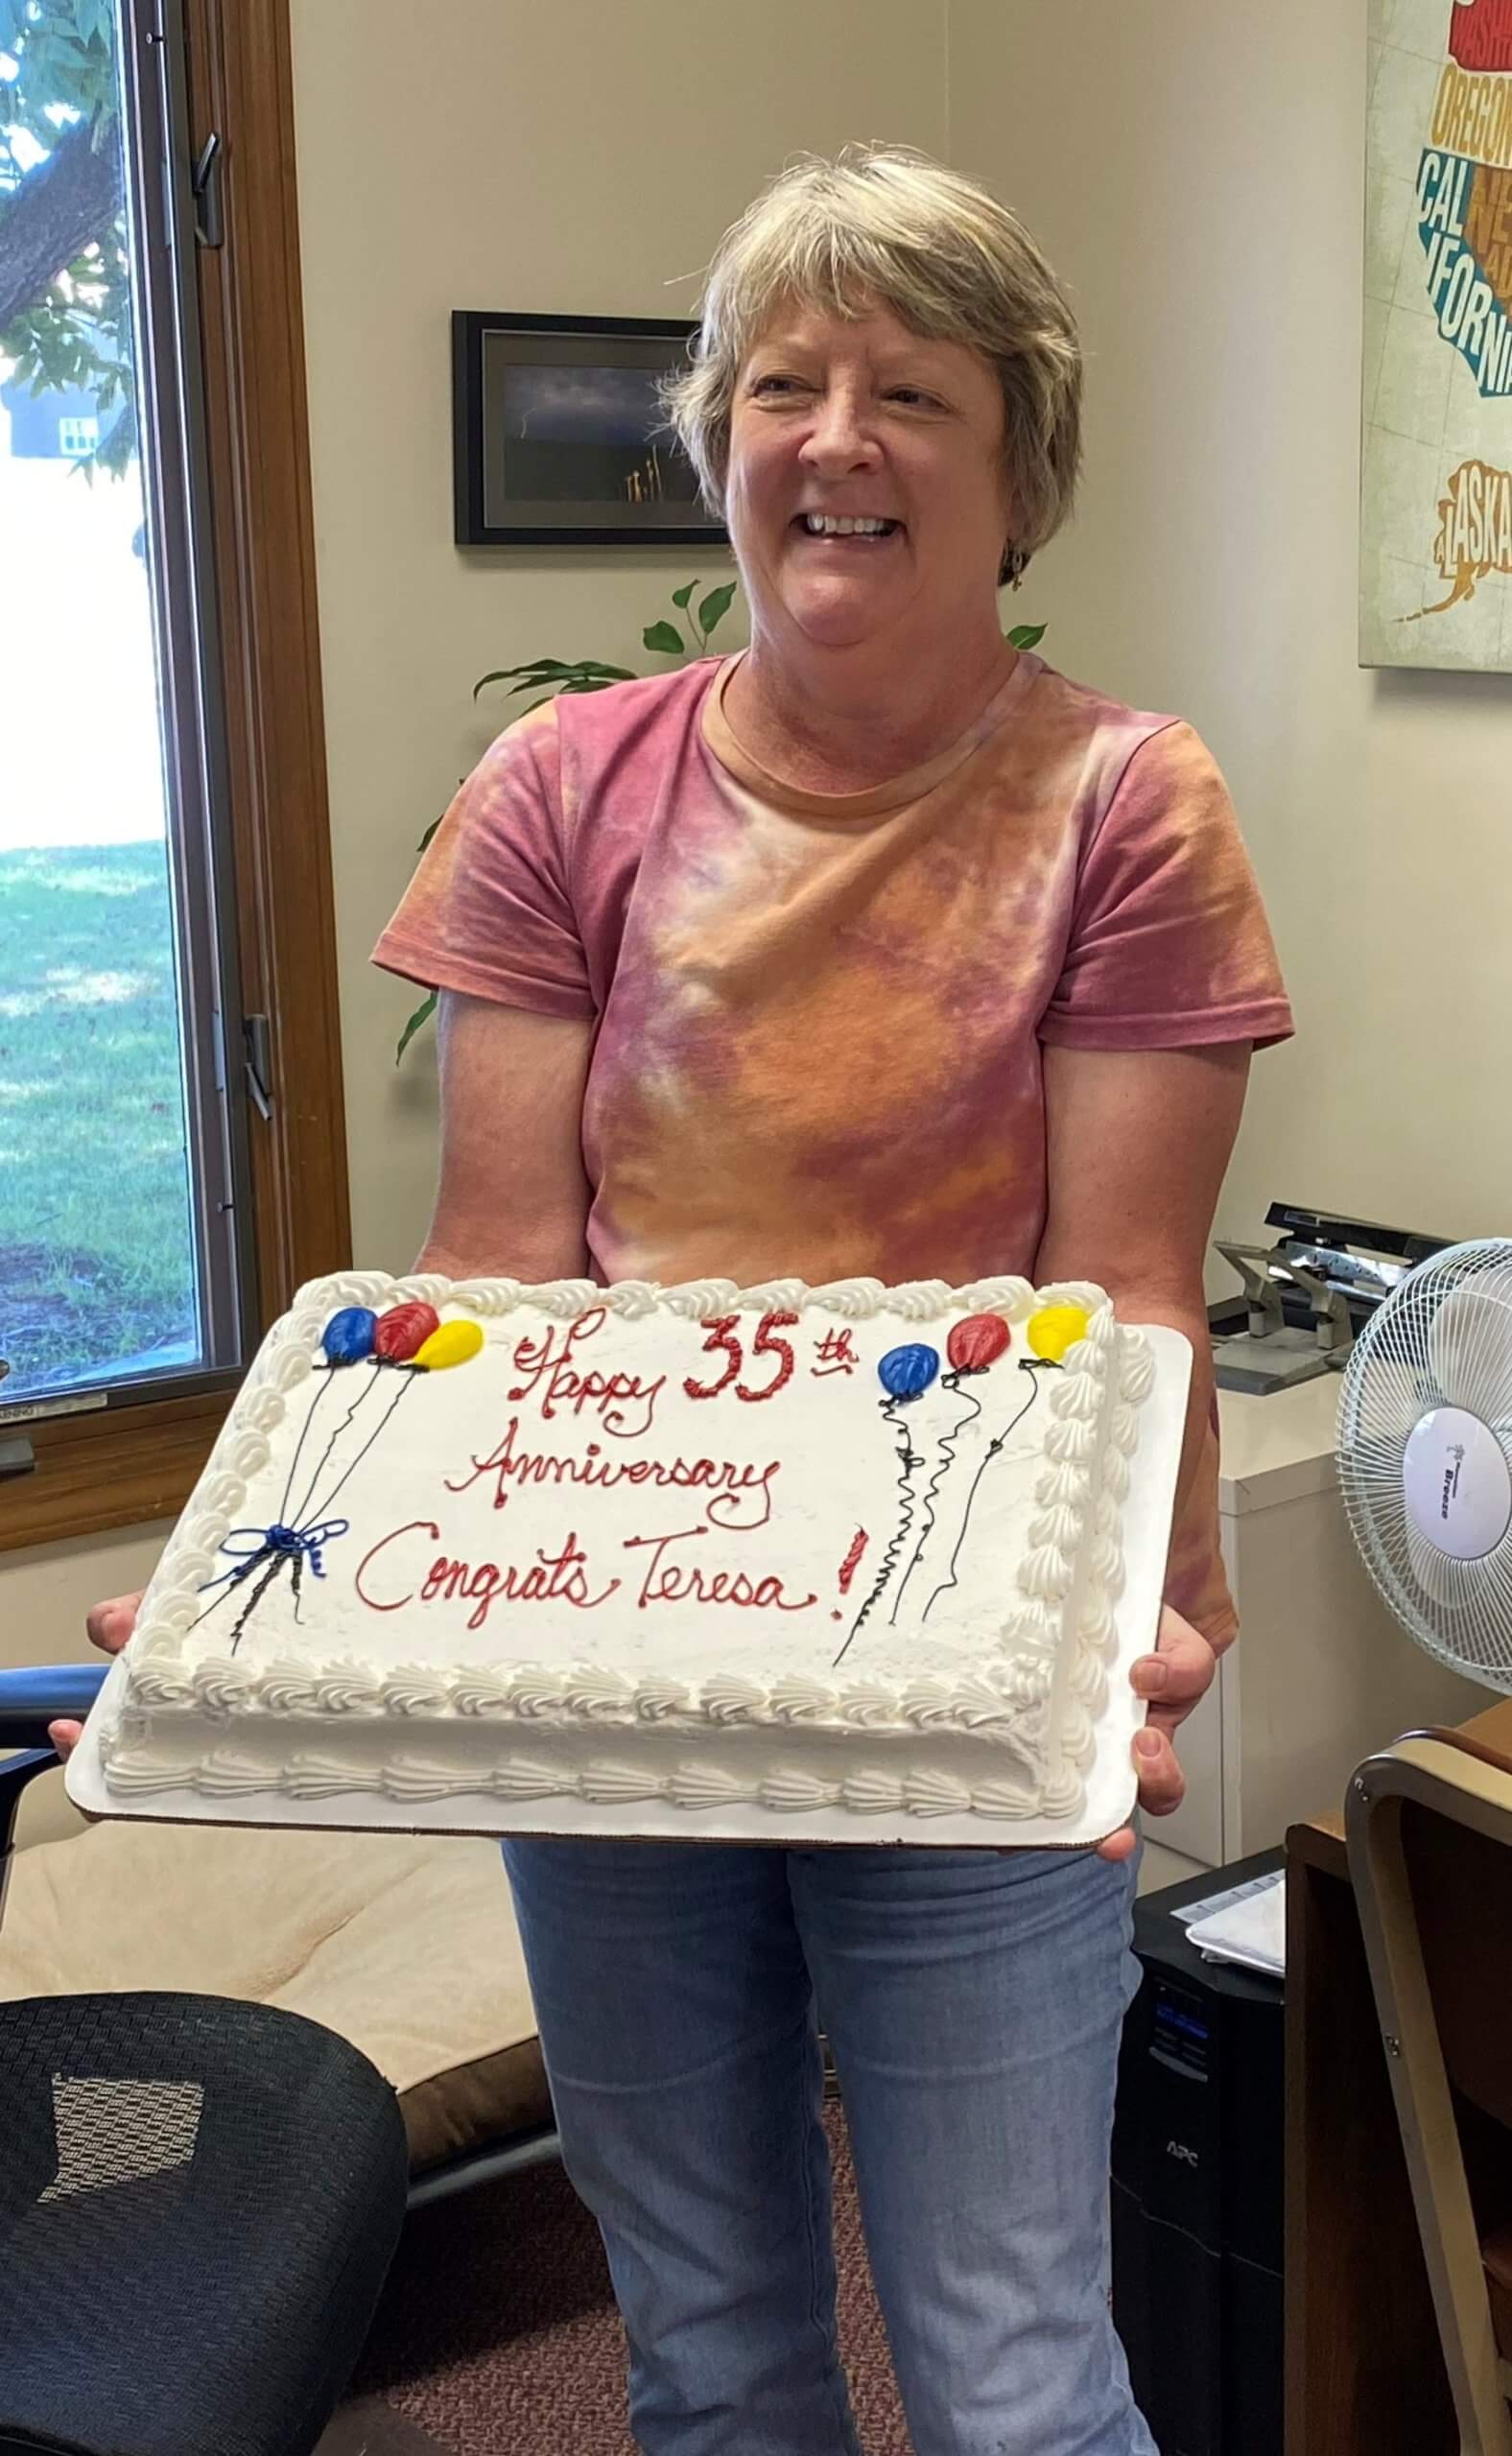 Teresa and her 35 Year Anniversary cake